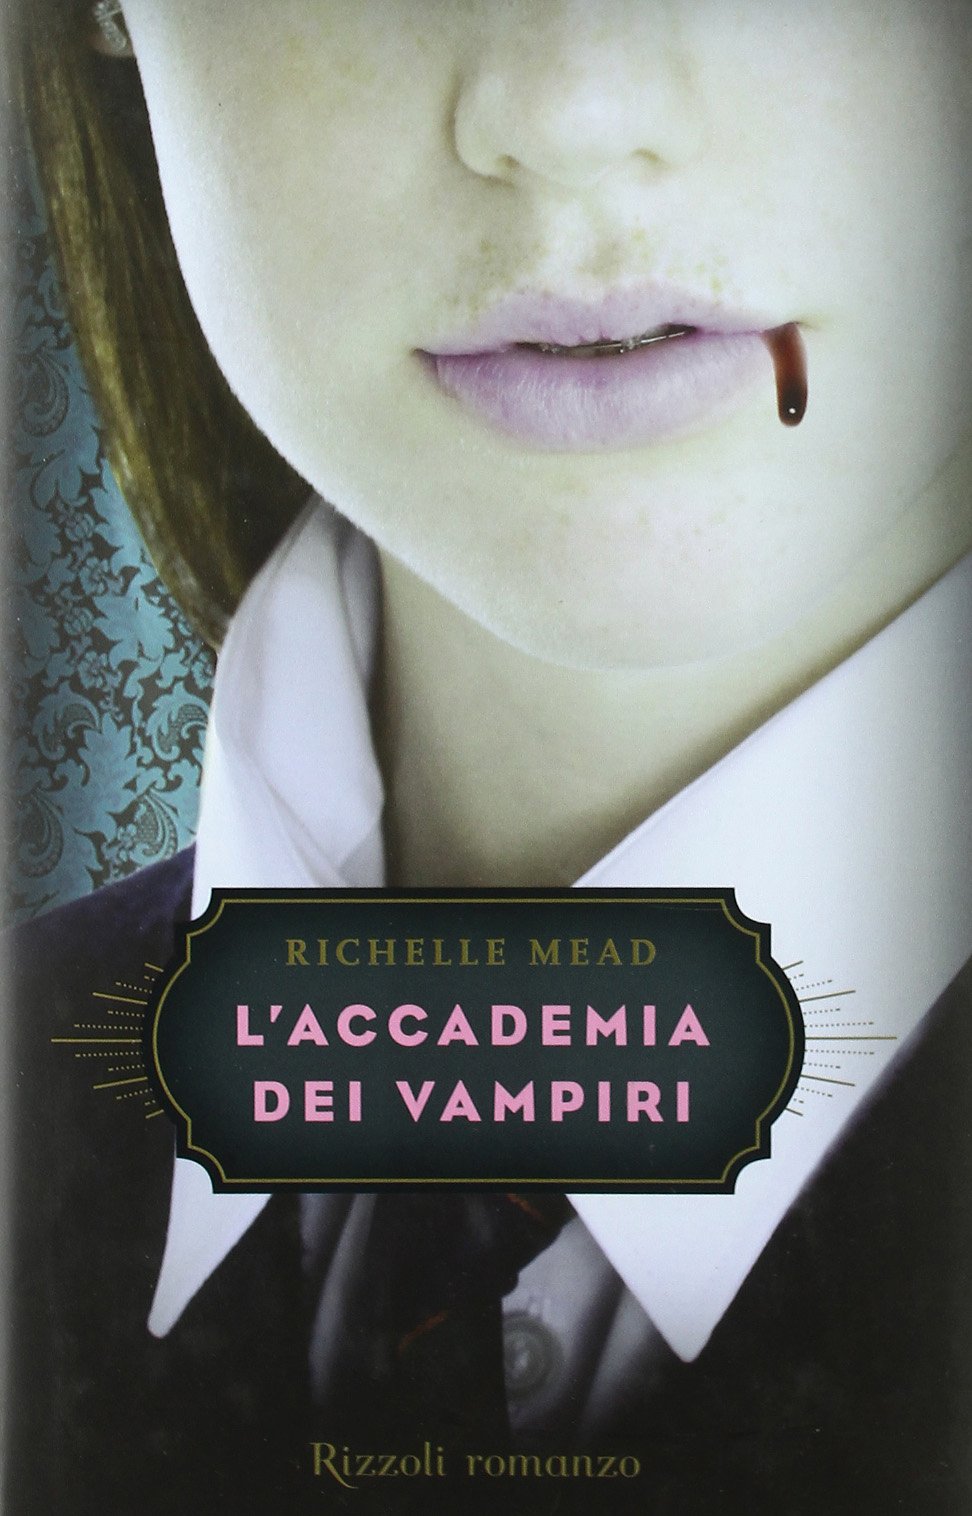 Richelle Mead L'accademia dei vampiri - copertina